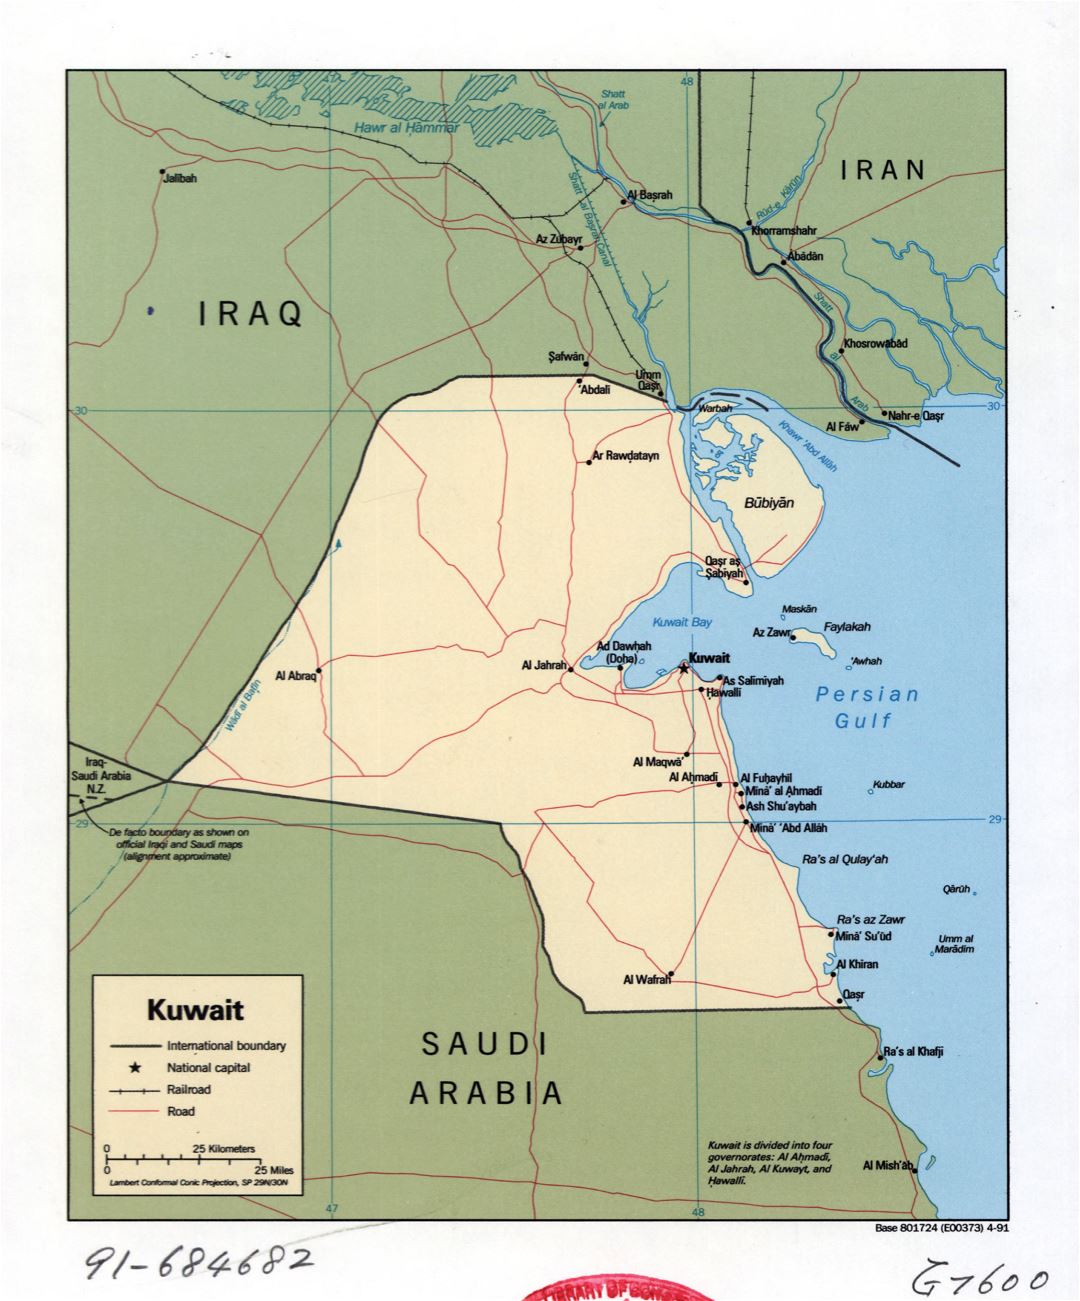 Grande detallado mapa político de Kuwait con carreteras, ferrocarriles y ciudades - 1991